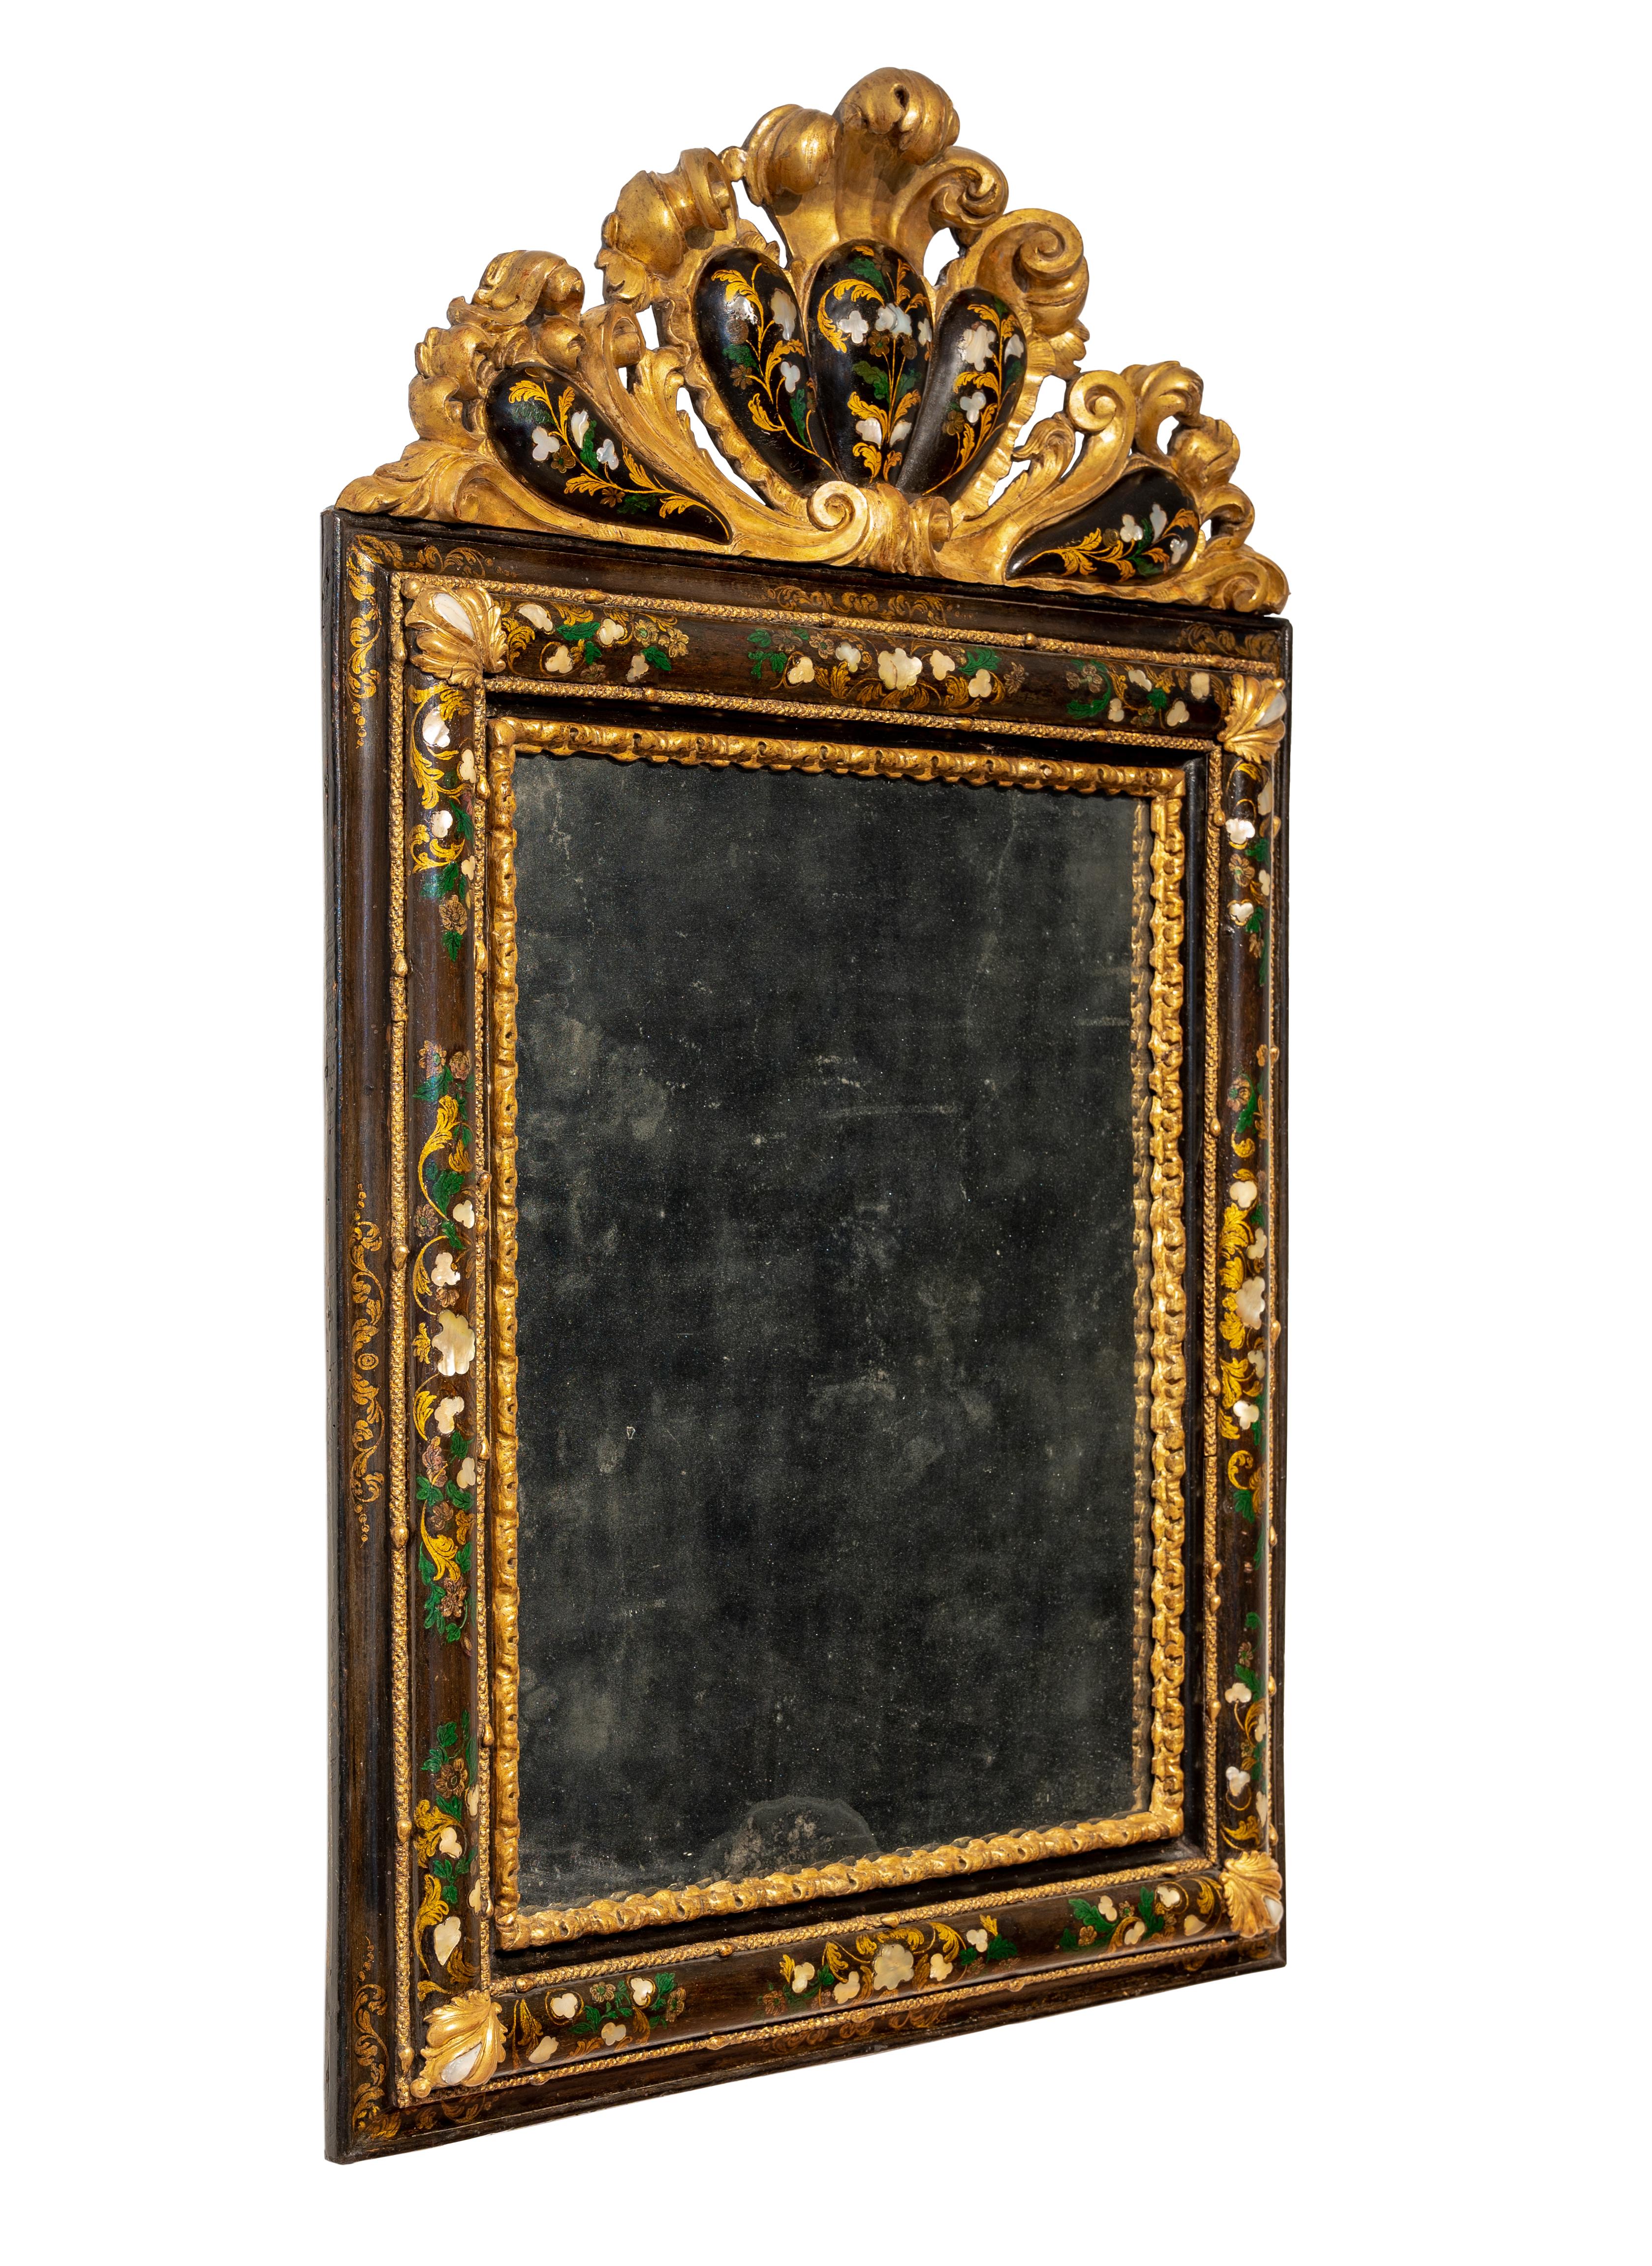 Extraordinaire miroir vénitien en bois sculpté, laqué et doré. Bandeau légèrement arrondi à décor feuillagé en laque polychrome et incrustations de nacre, frises sculptées et feuillagées aux angles, cimaises façonnées et arrondies, également dorées